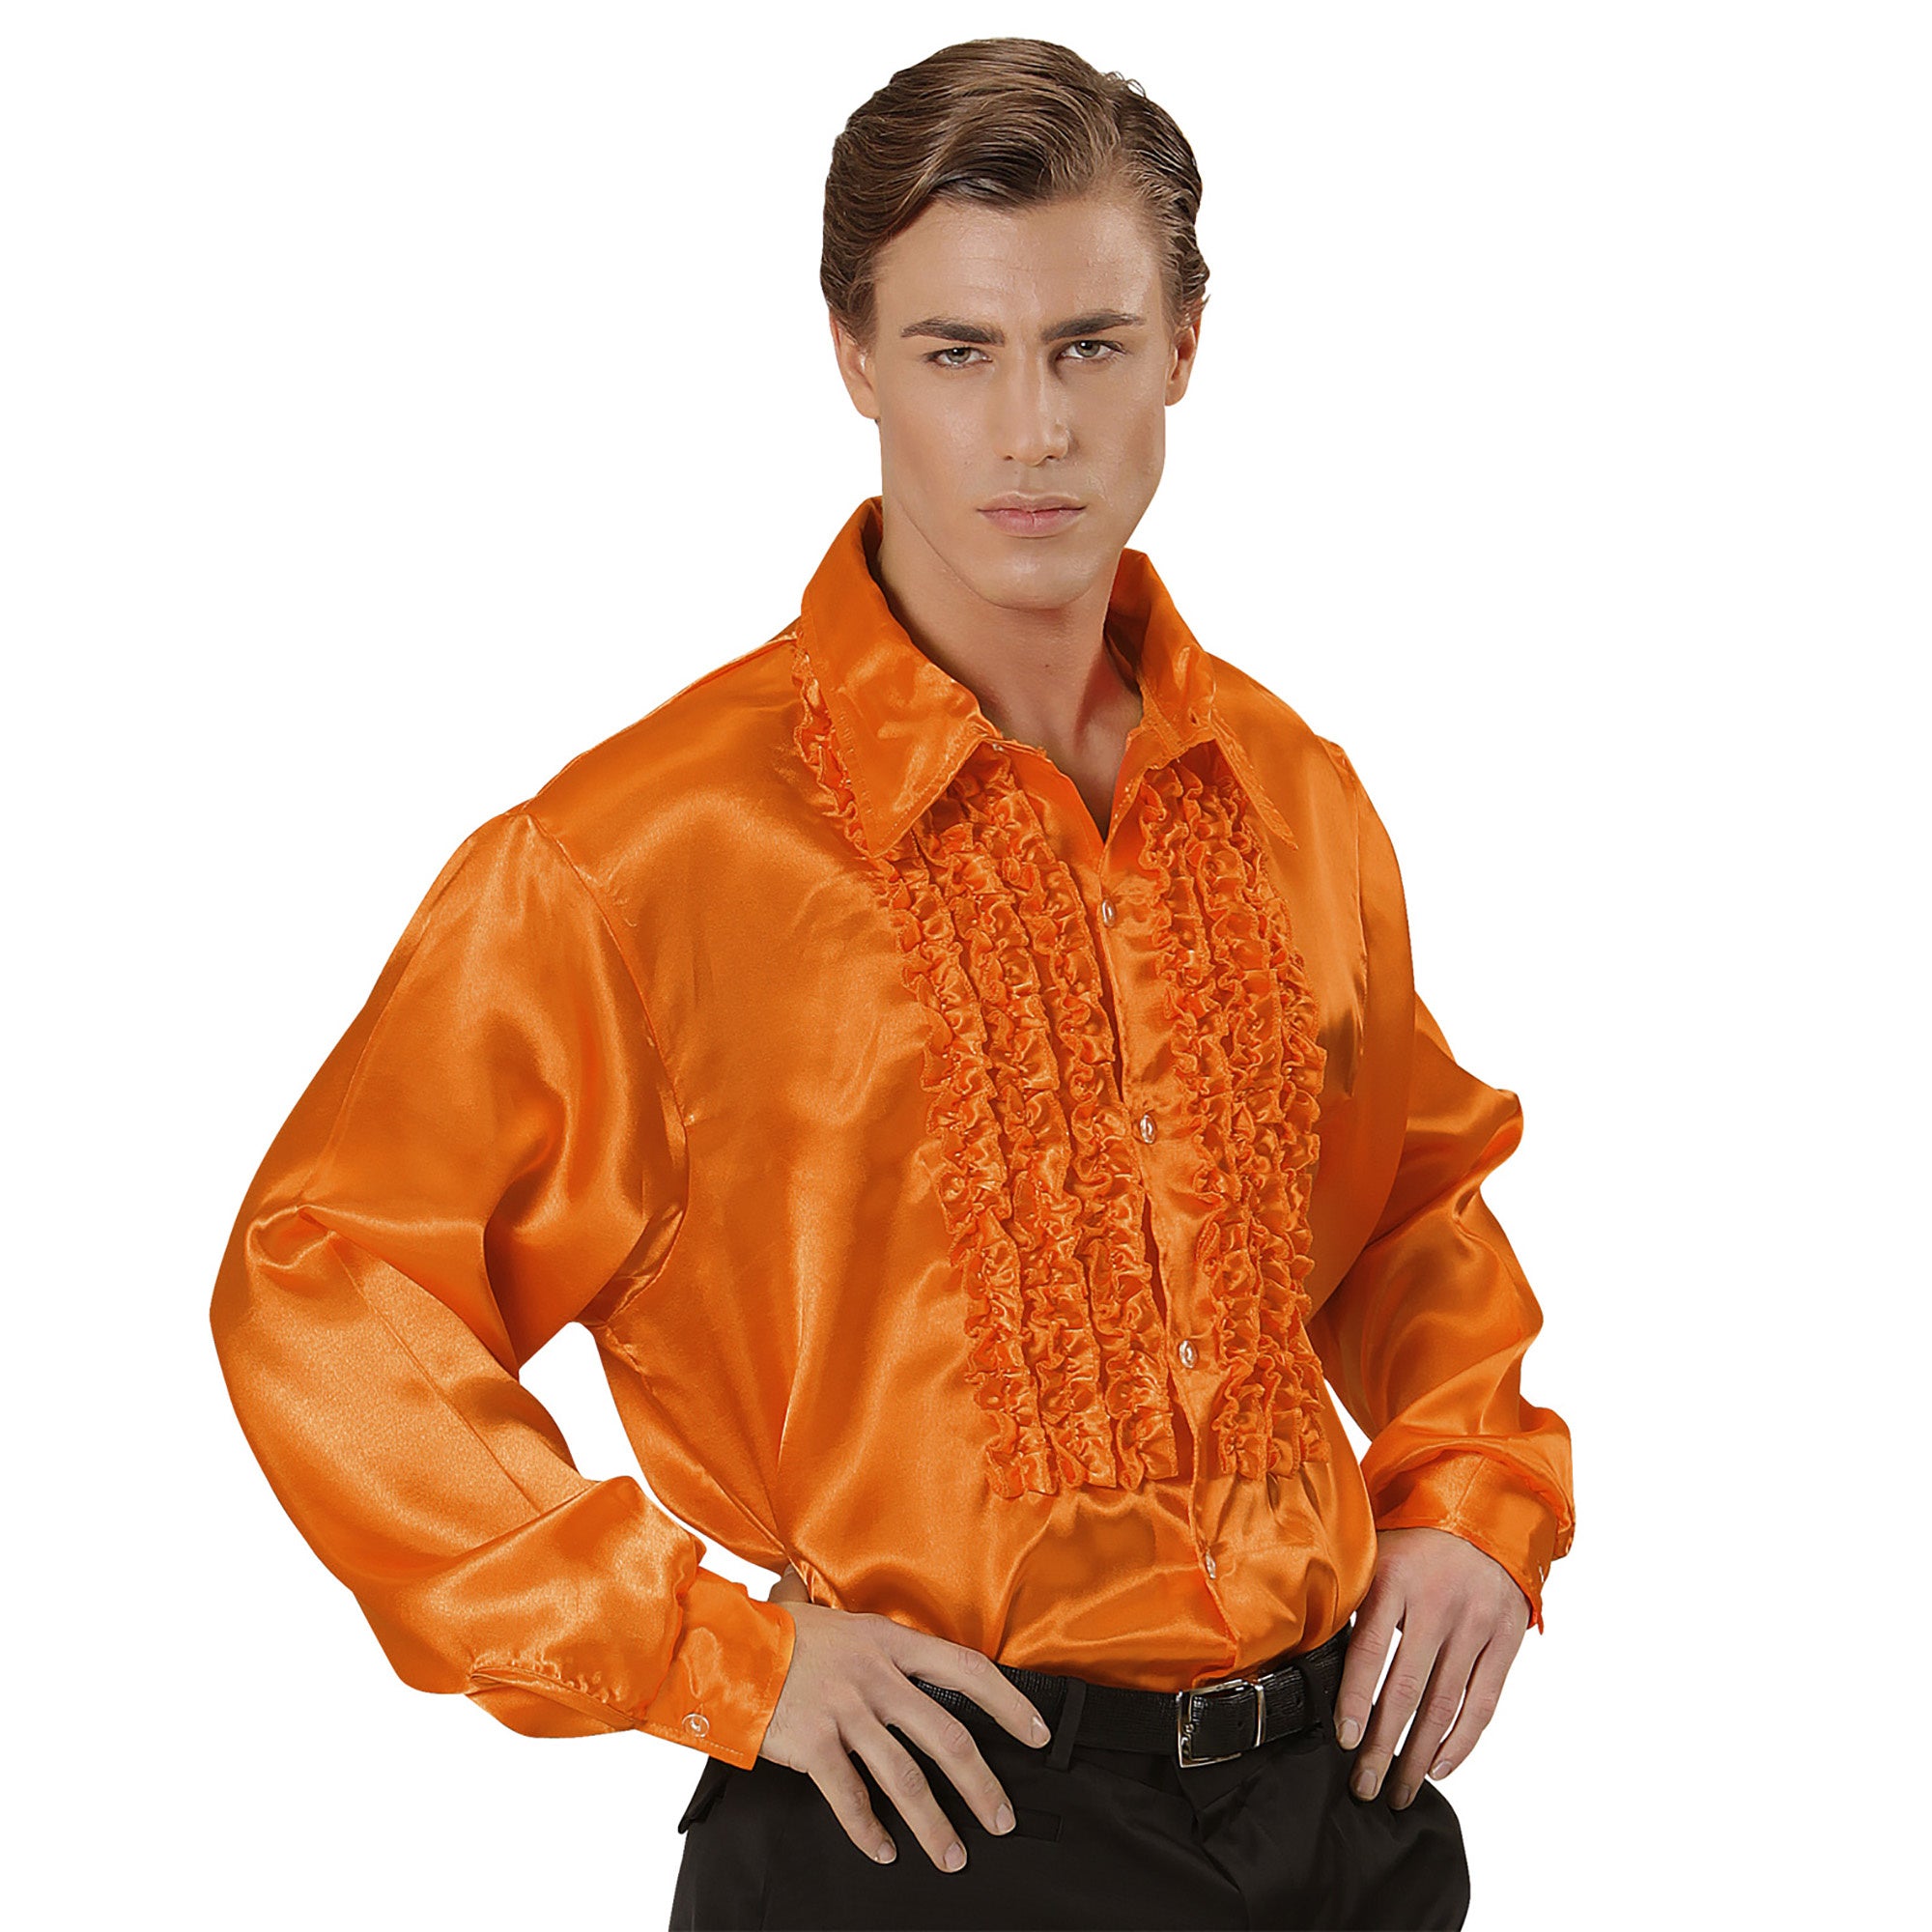 Widmann - Jaren 80 & 90 Kostuum - Lekker Foute Rouchenblouse Oranje Man - Oranje - XL - Carnavalskleding - Verkleedkleding